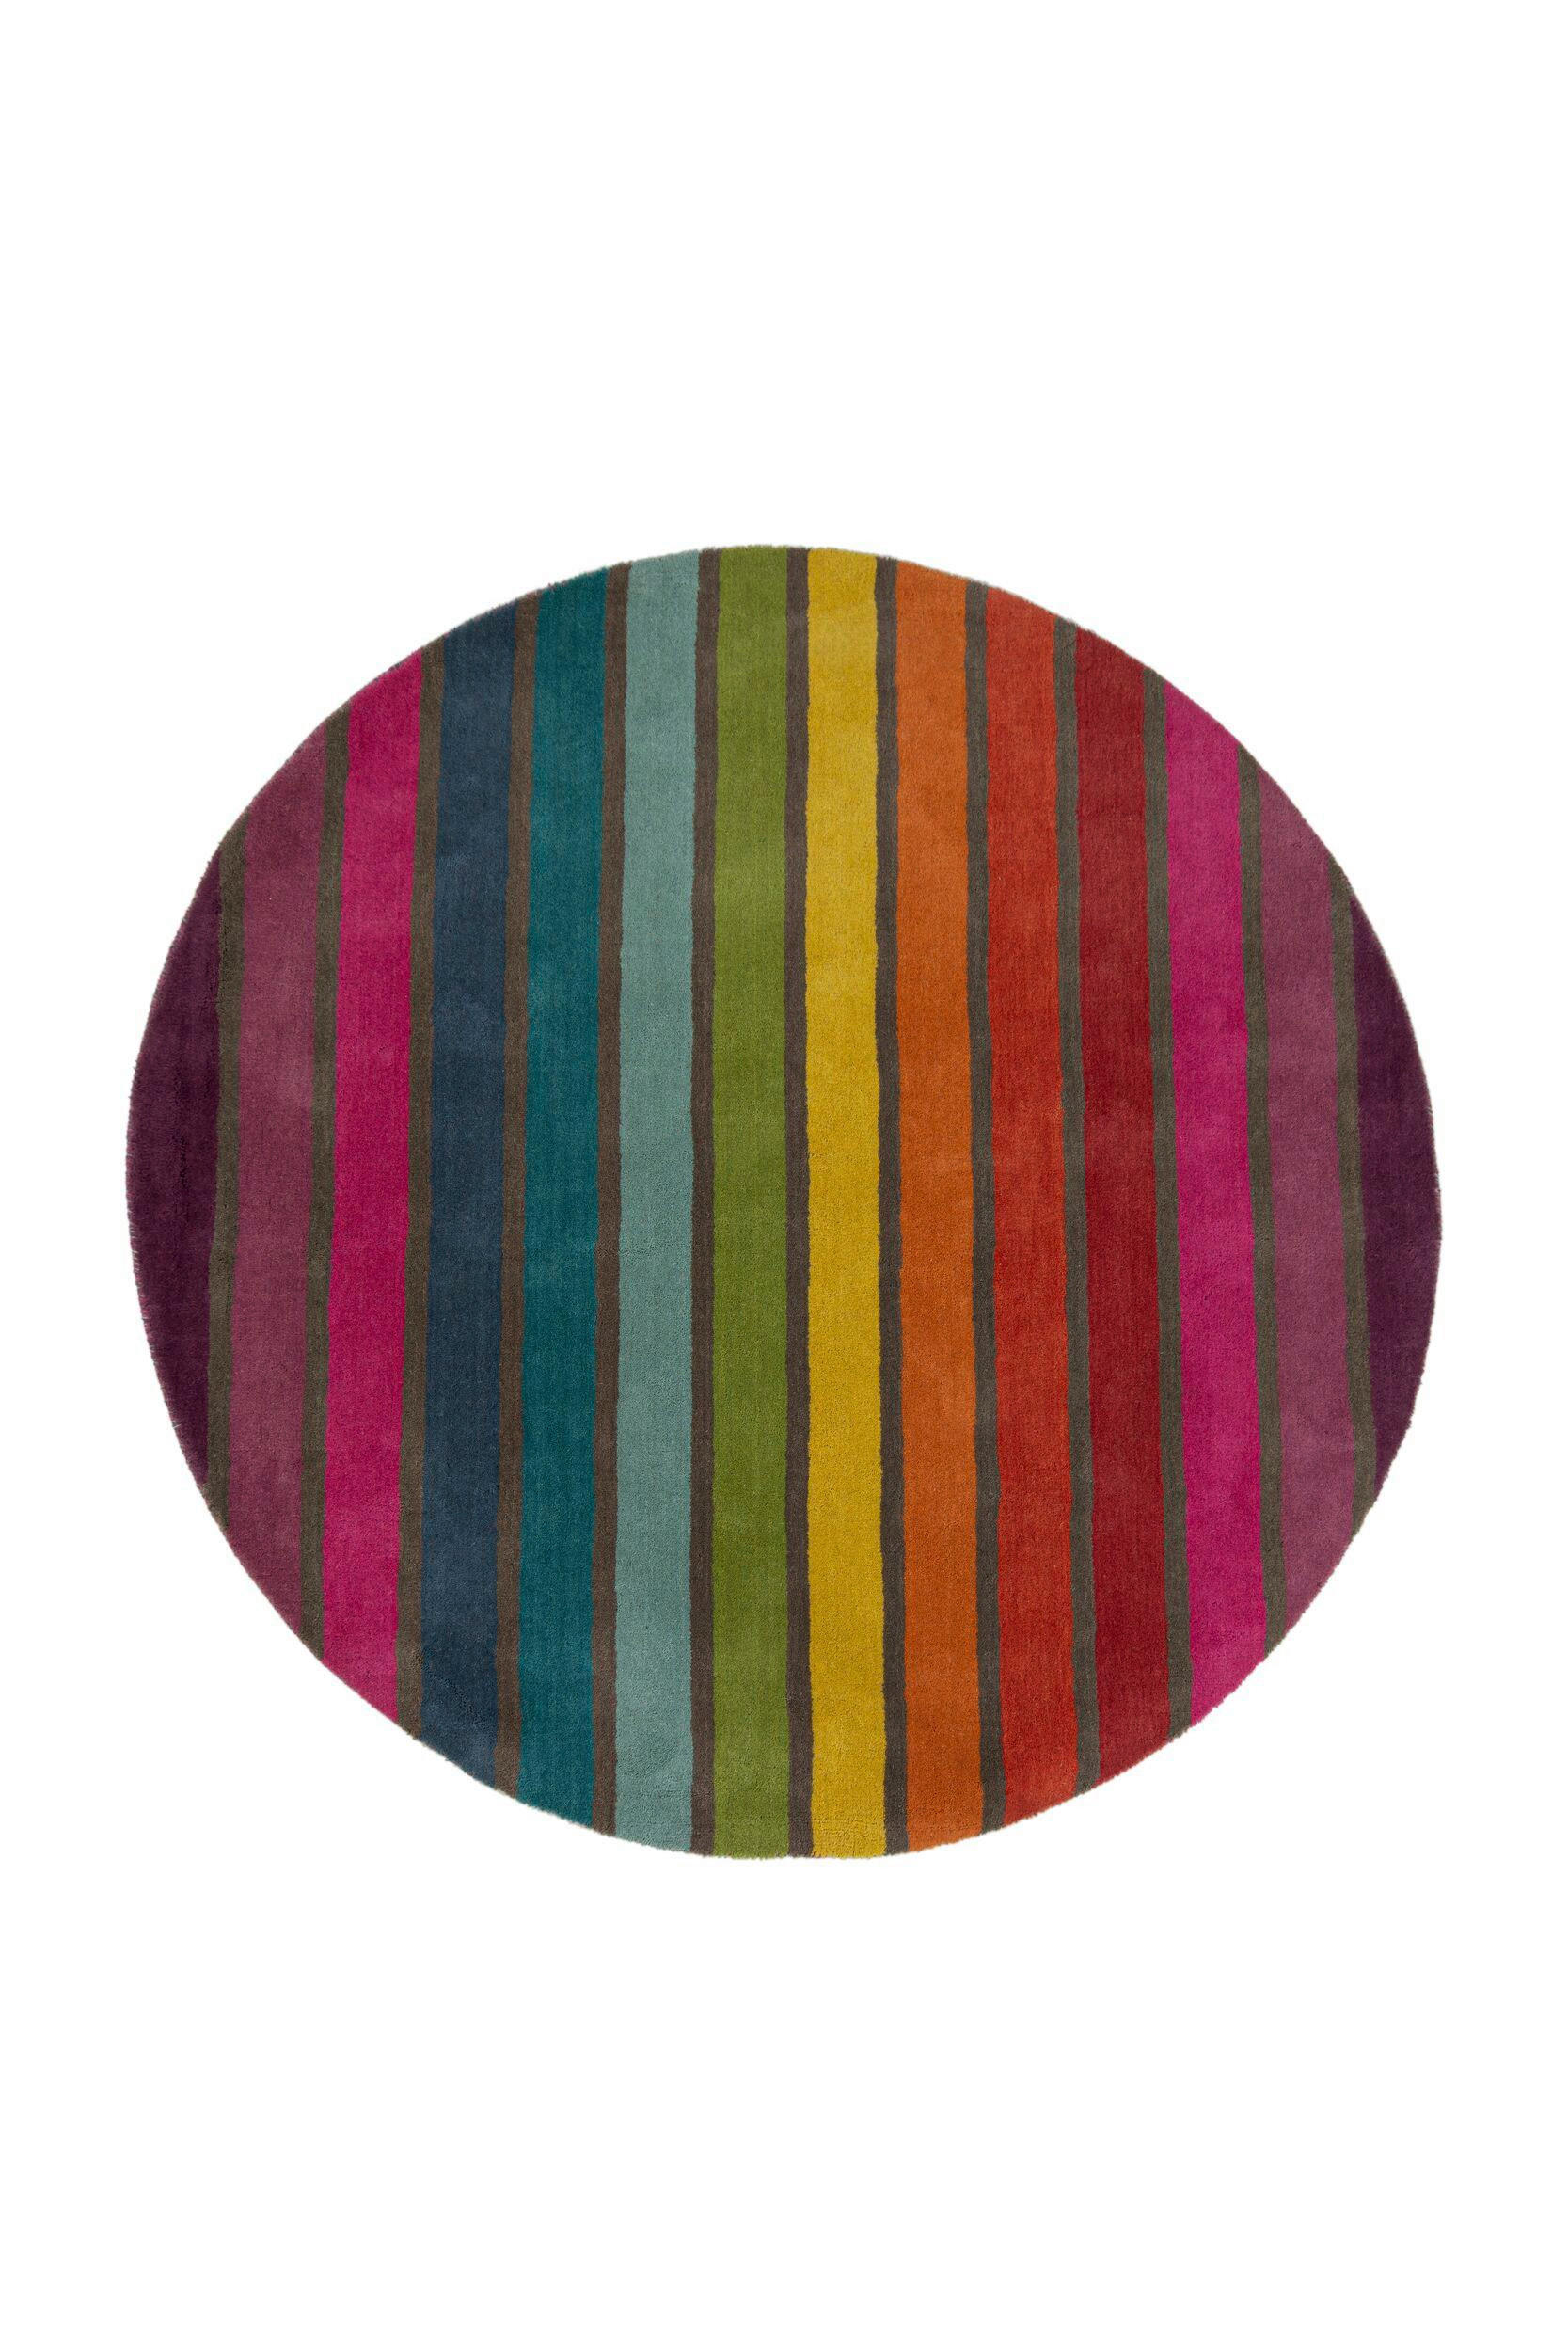 VLNĚNÝ KOBEREC, 160 cm vícebarevná - vícebarevná - textil